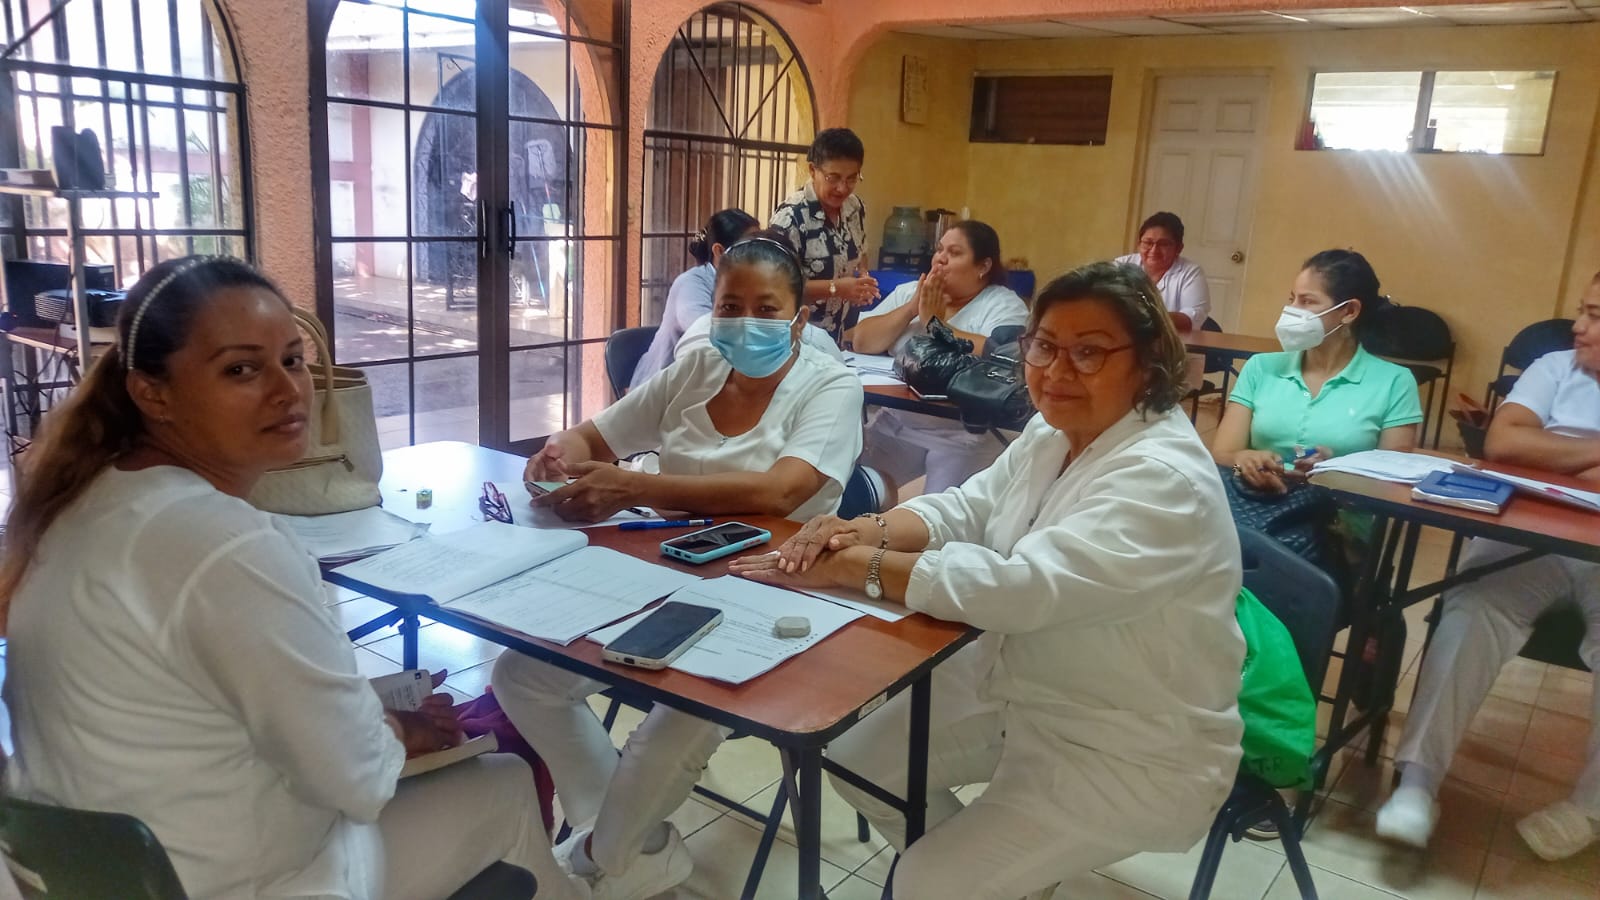 La Federación Panamericana de Profesionales de Enfermería FEPPEN felicita a la Asociación de Enfermeras Nicaragüenses por los procesos de Capacitación